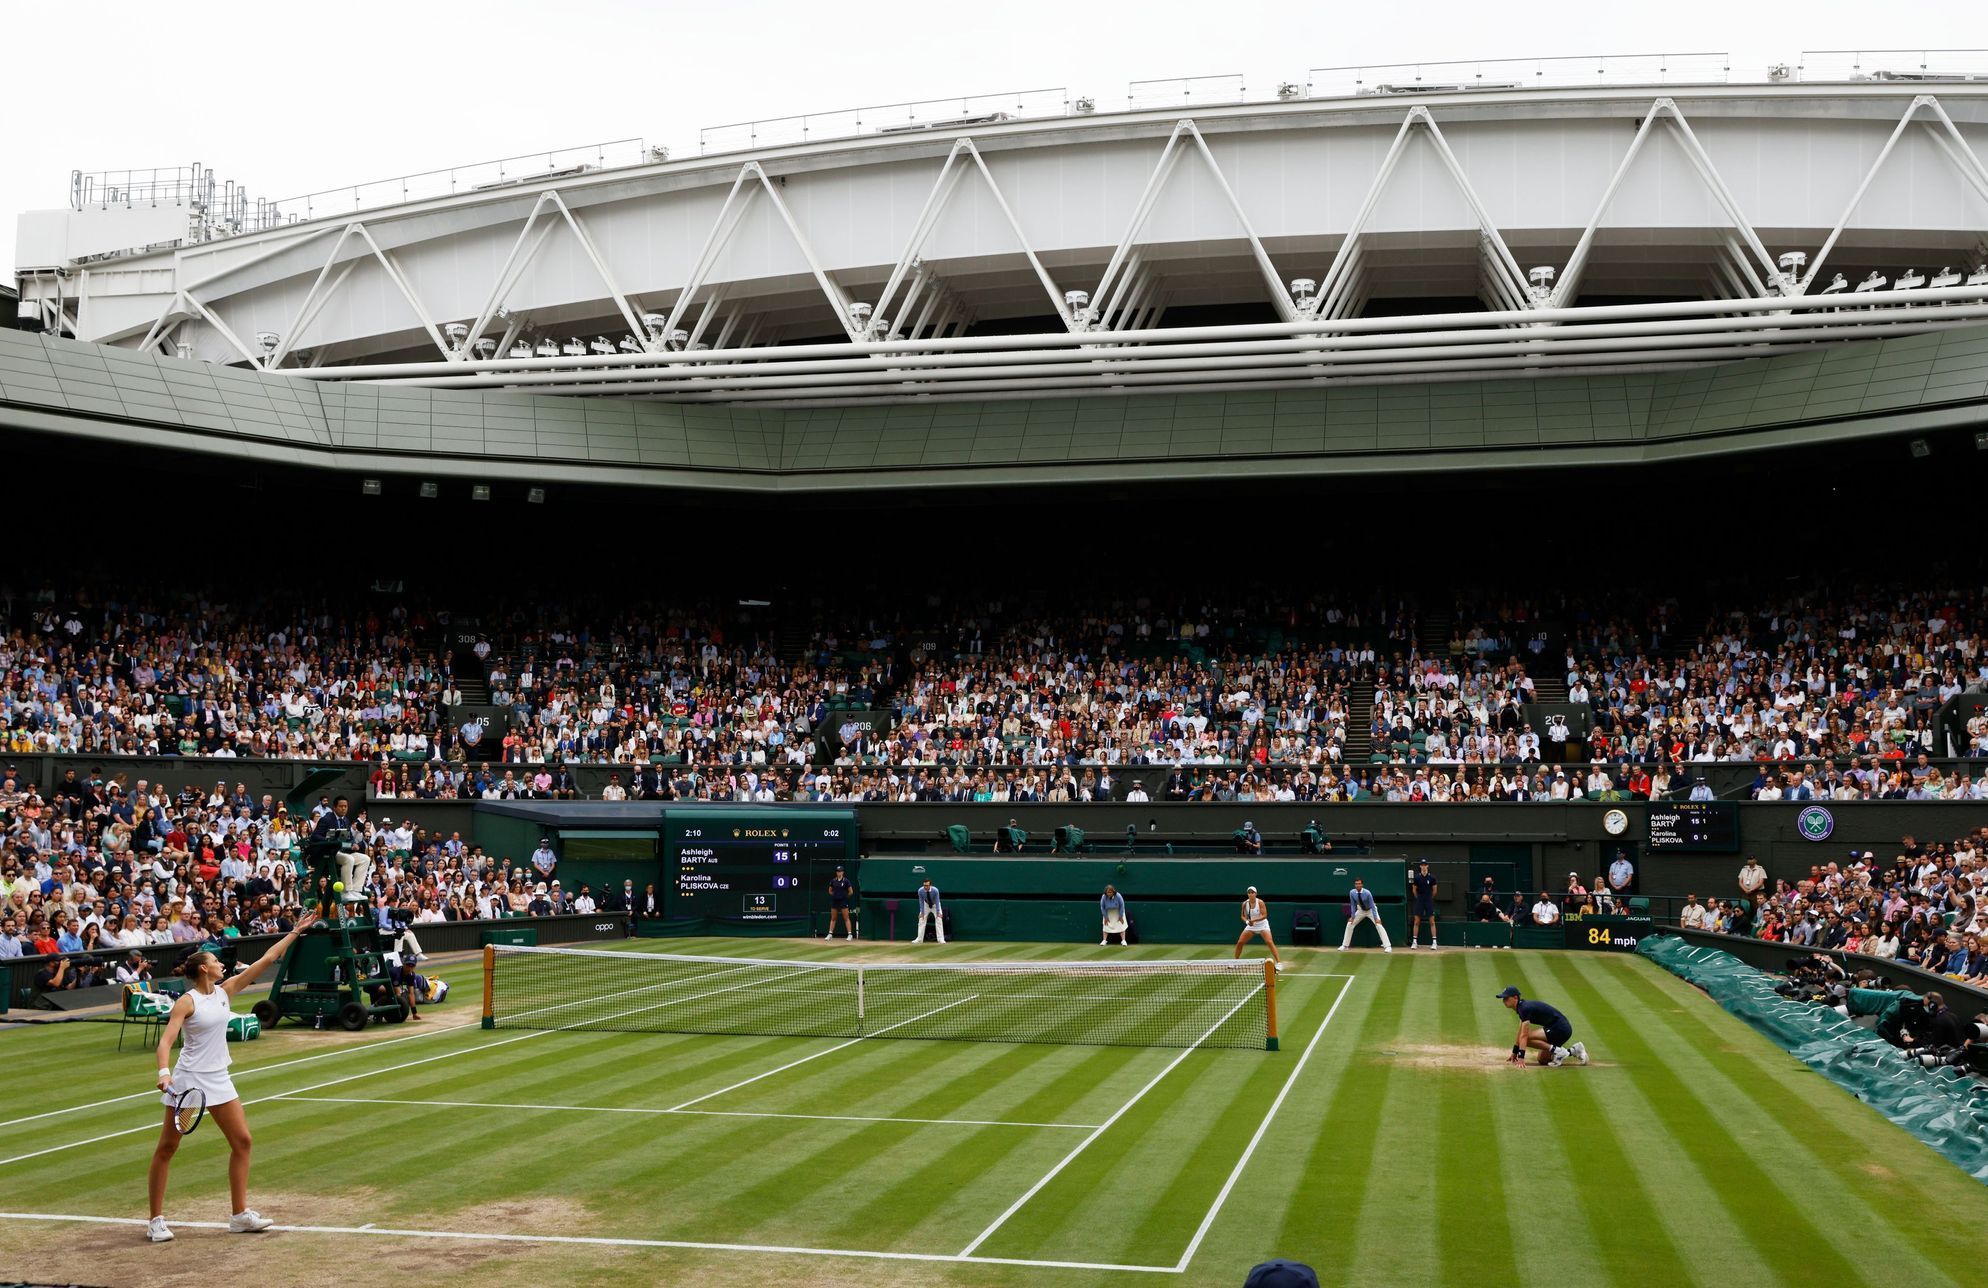 Pohled na centrální kurt během finále Wimbledonu 2021 Karolína Plíšková - Ashleigh Bartyová.